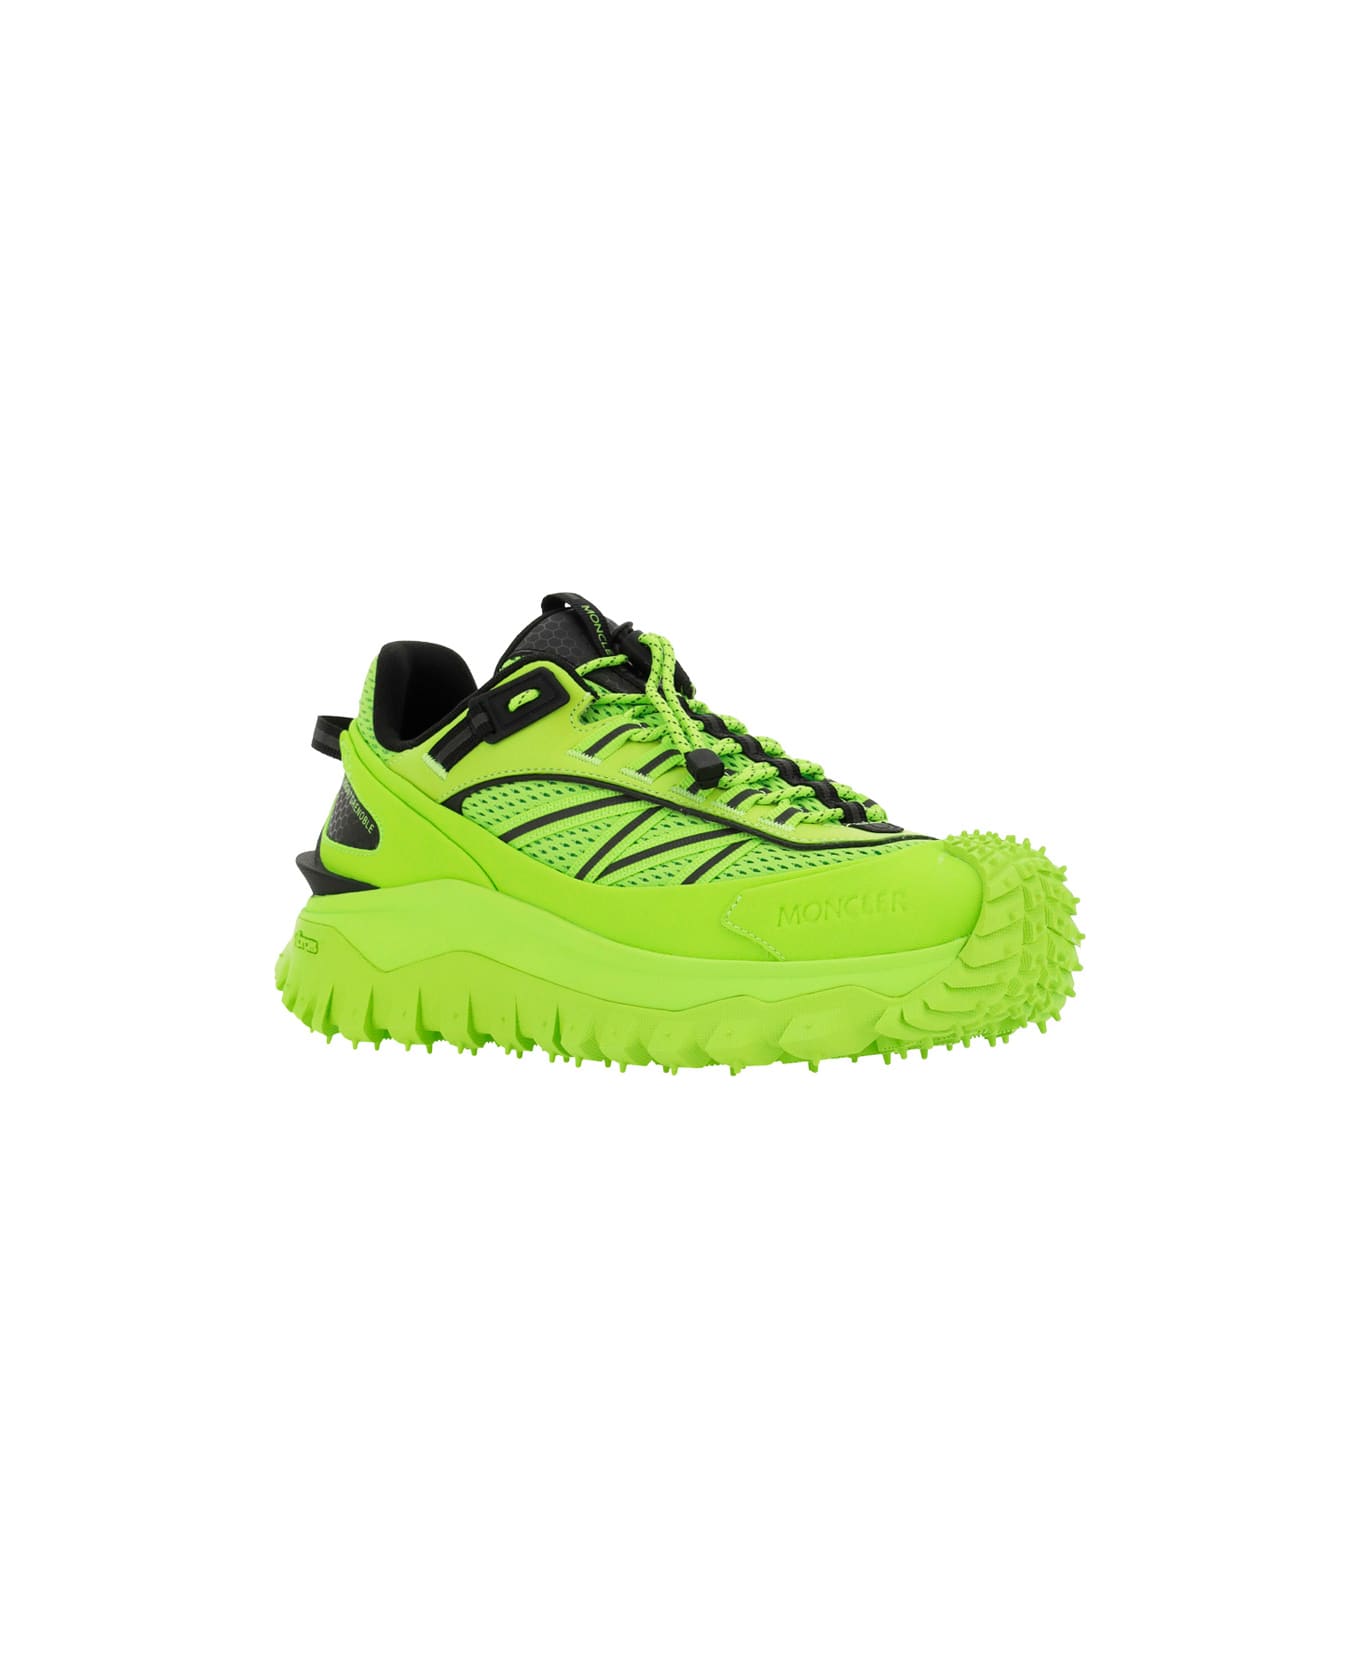 Moncler Trailgrip Sneaker - N11